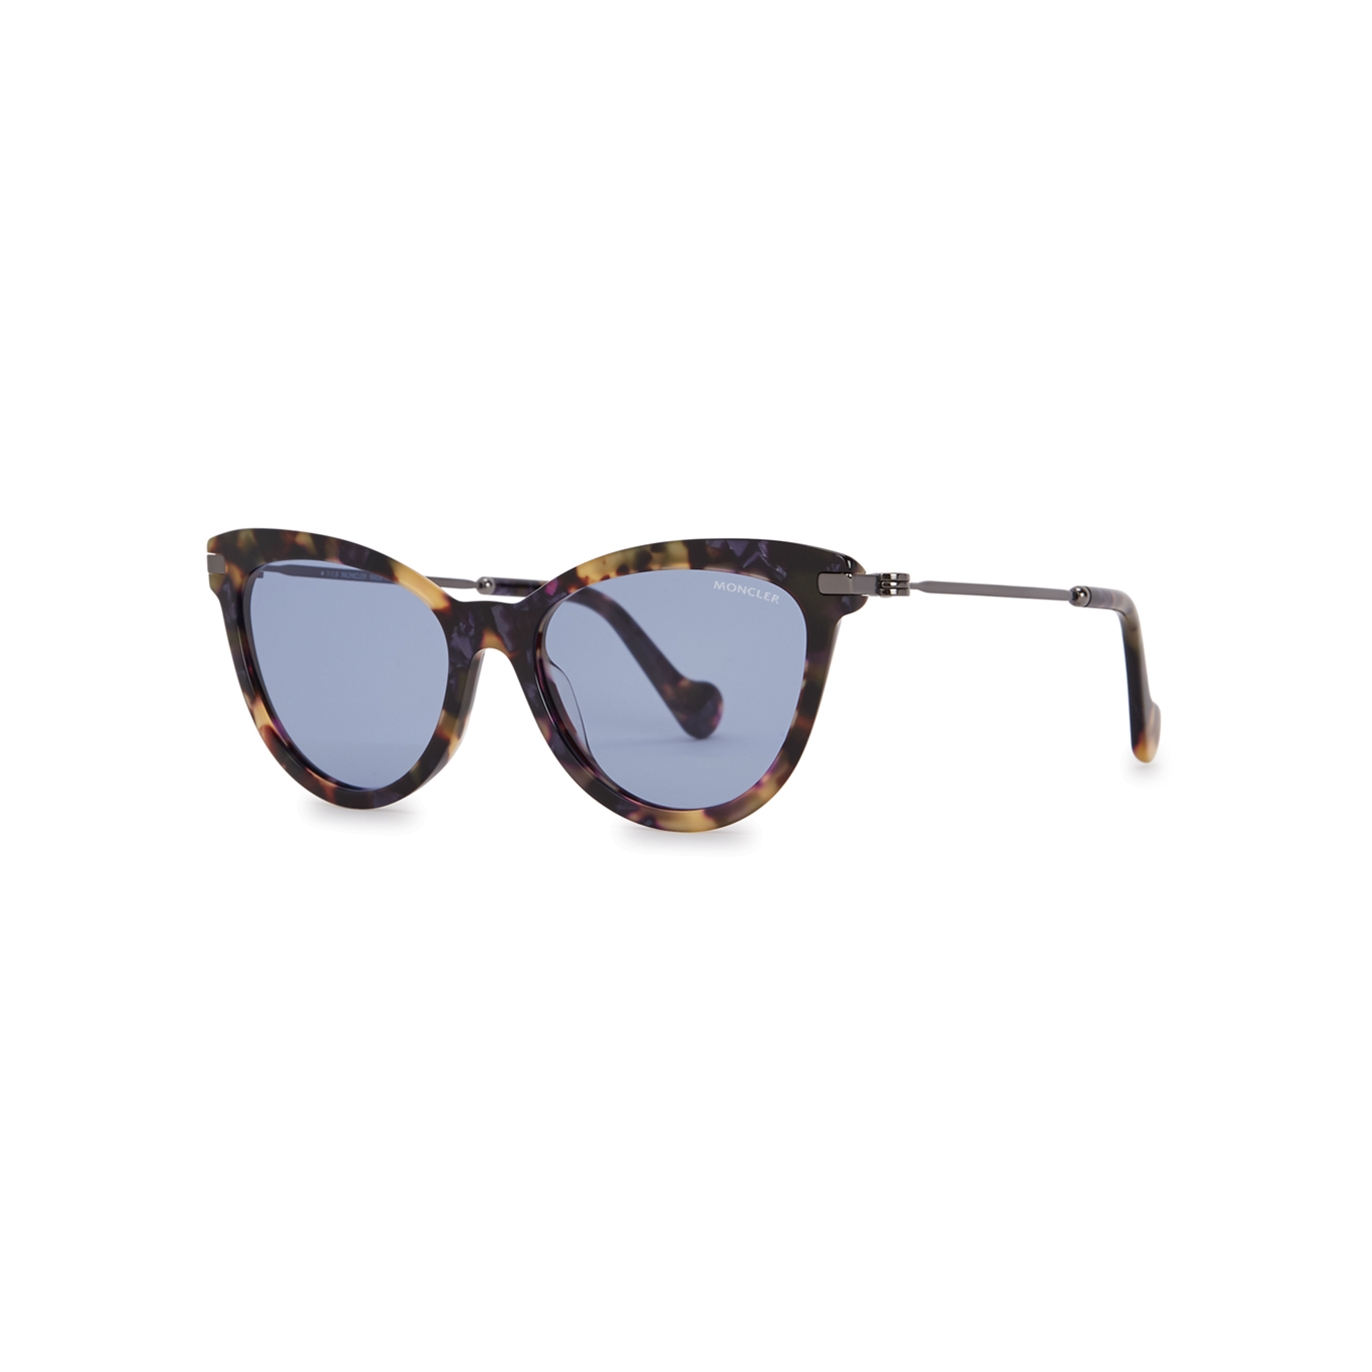 Moncler ML0080 Tortoiseshell Cat-eye Sunglasses - Havana